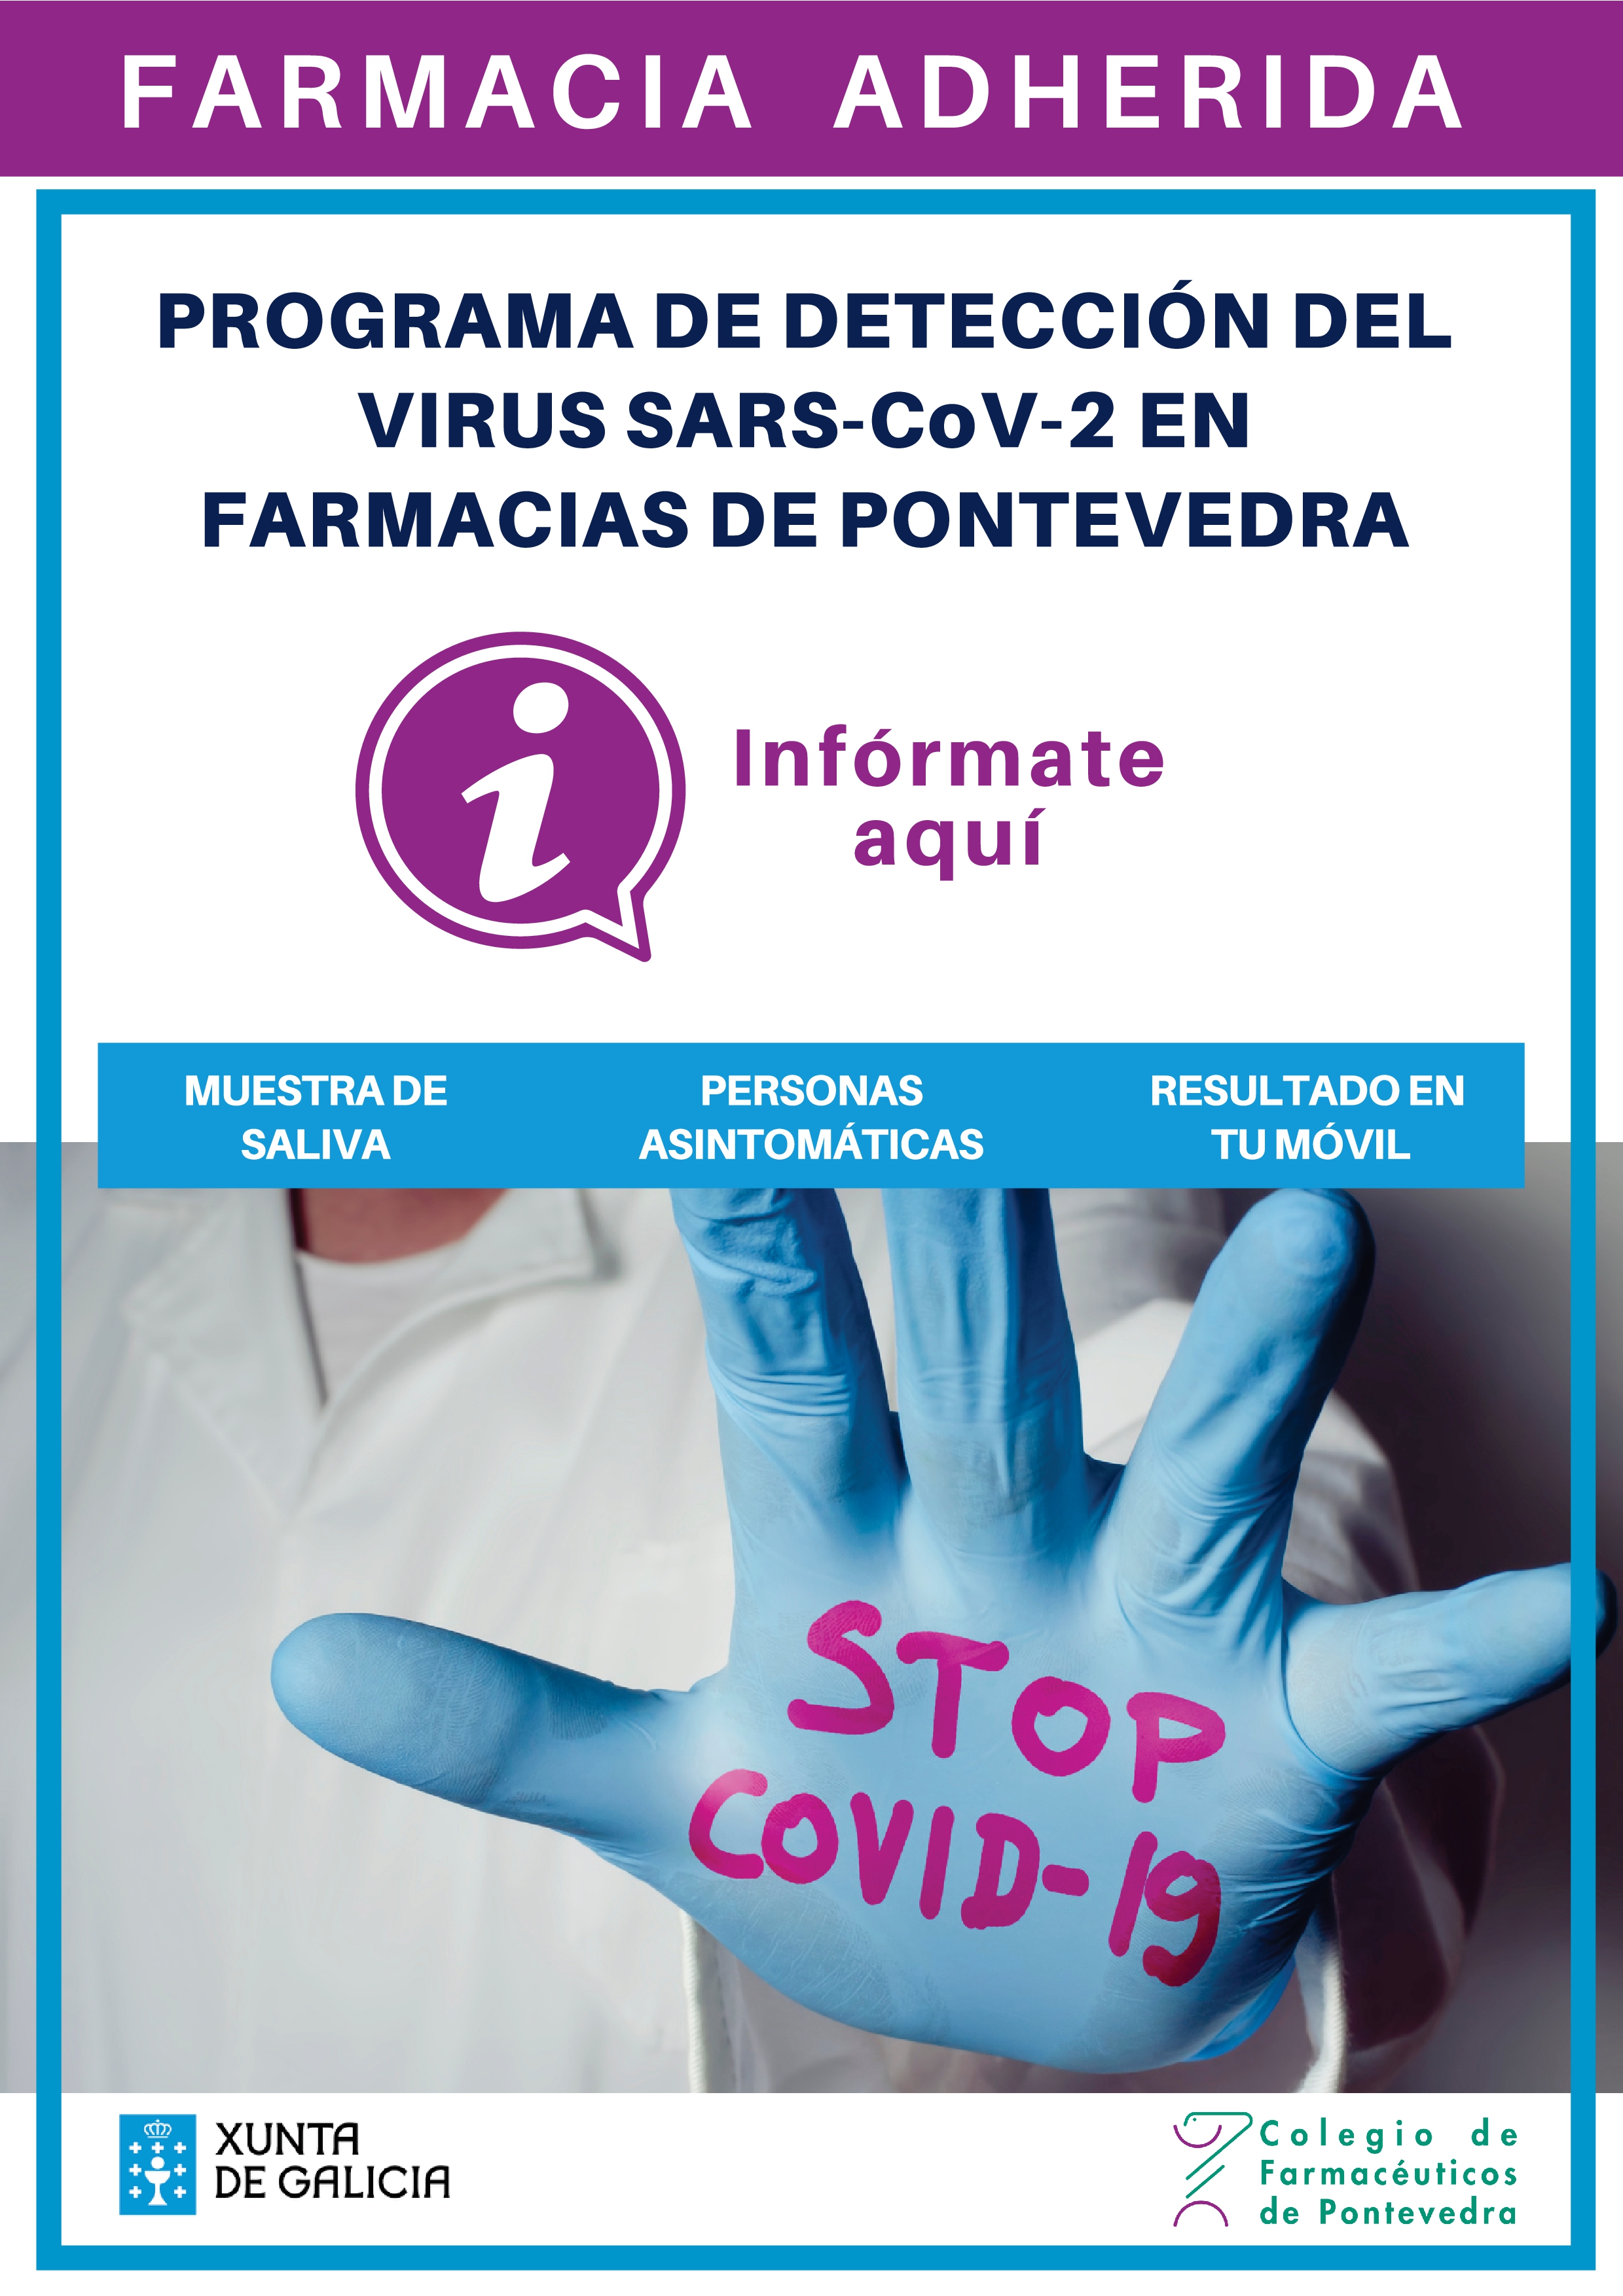 Nuevos datos sobre el cribado Covid-19 en farmacias de Pontevedra - Colegio de Farmacéuticos de Pontevedra